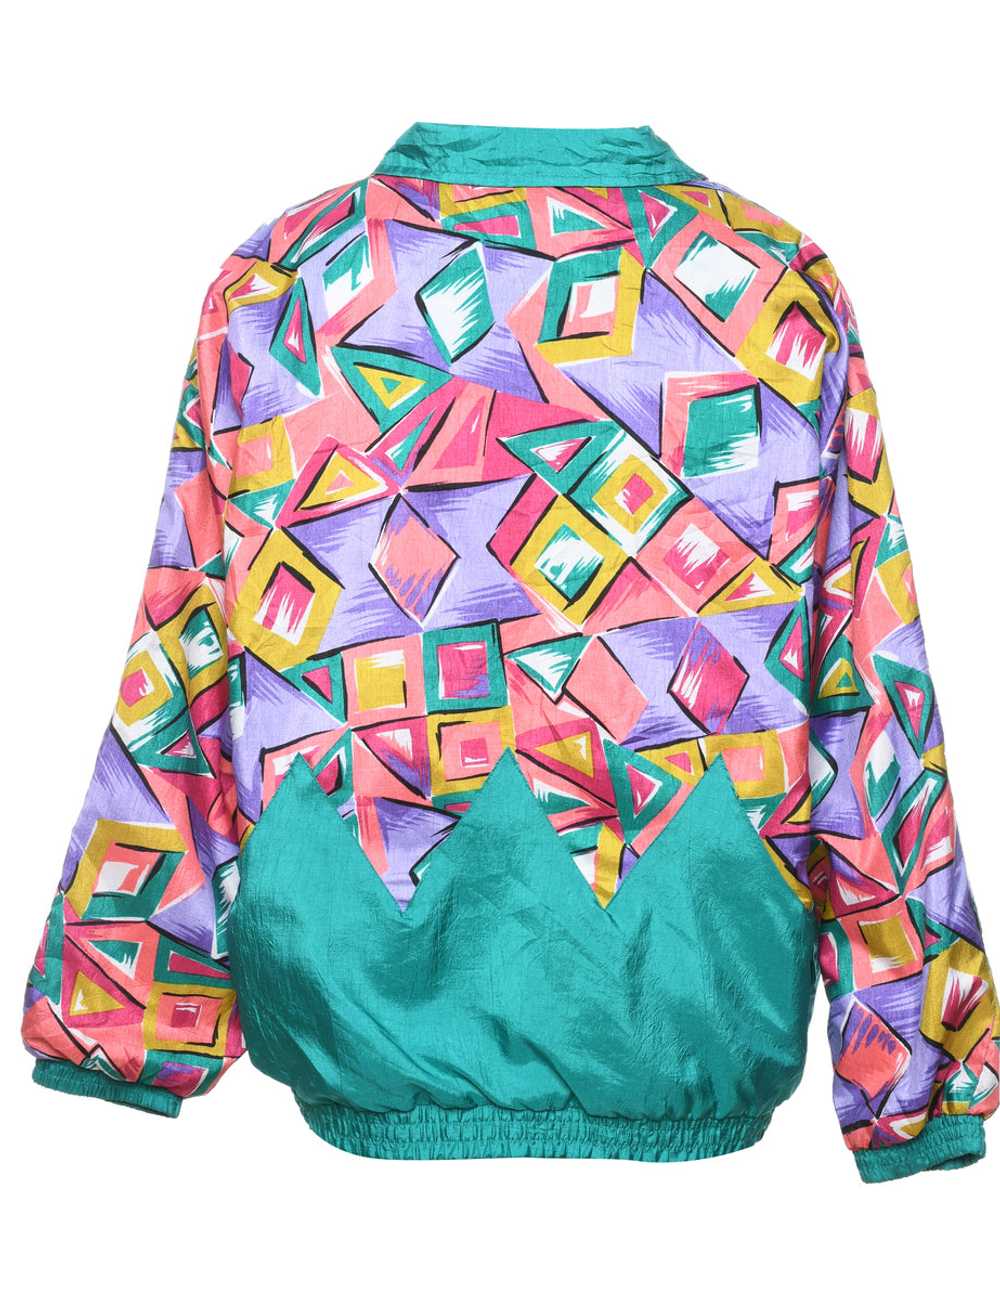 Geometric Pattern Multi-Colour 1980s Jacket - L - image 2